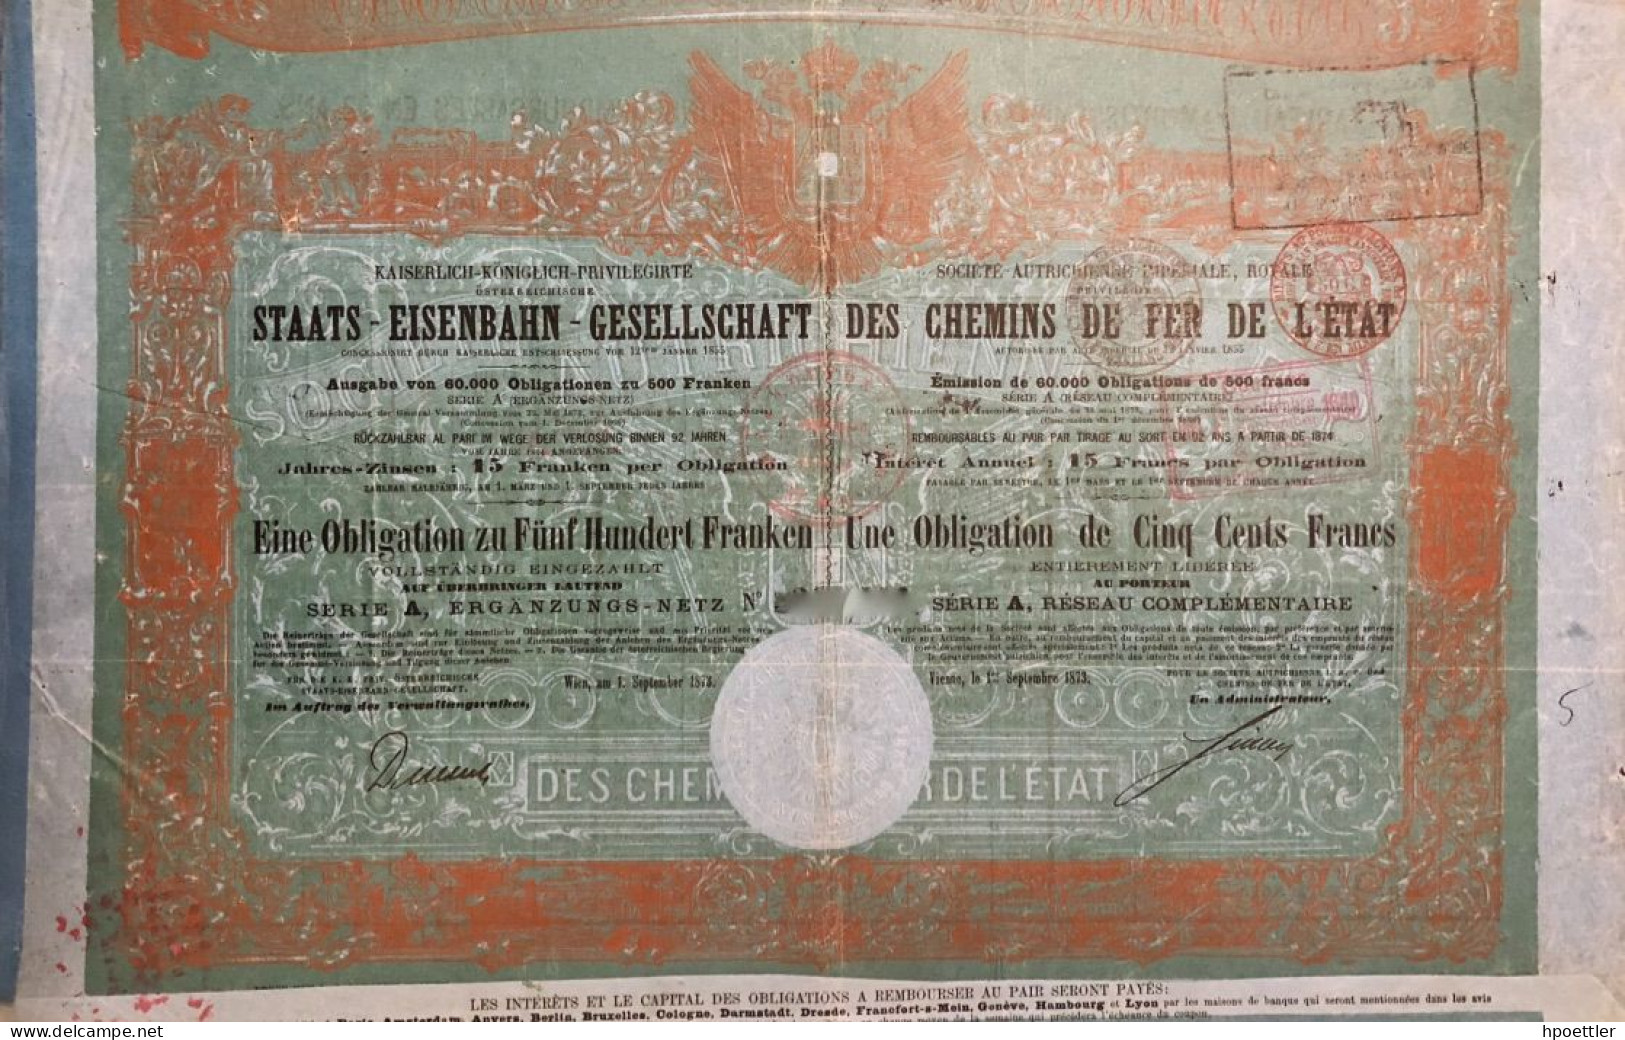 Vienne 1873: Societe Autrichienne Imperiale Royale, Privilegie Des Chemins De Fer De L'Etat - 500 Francs - Railway & Tramway